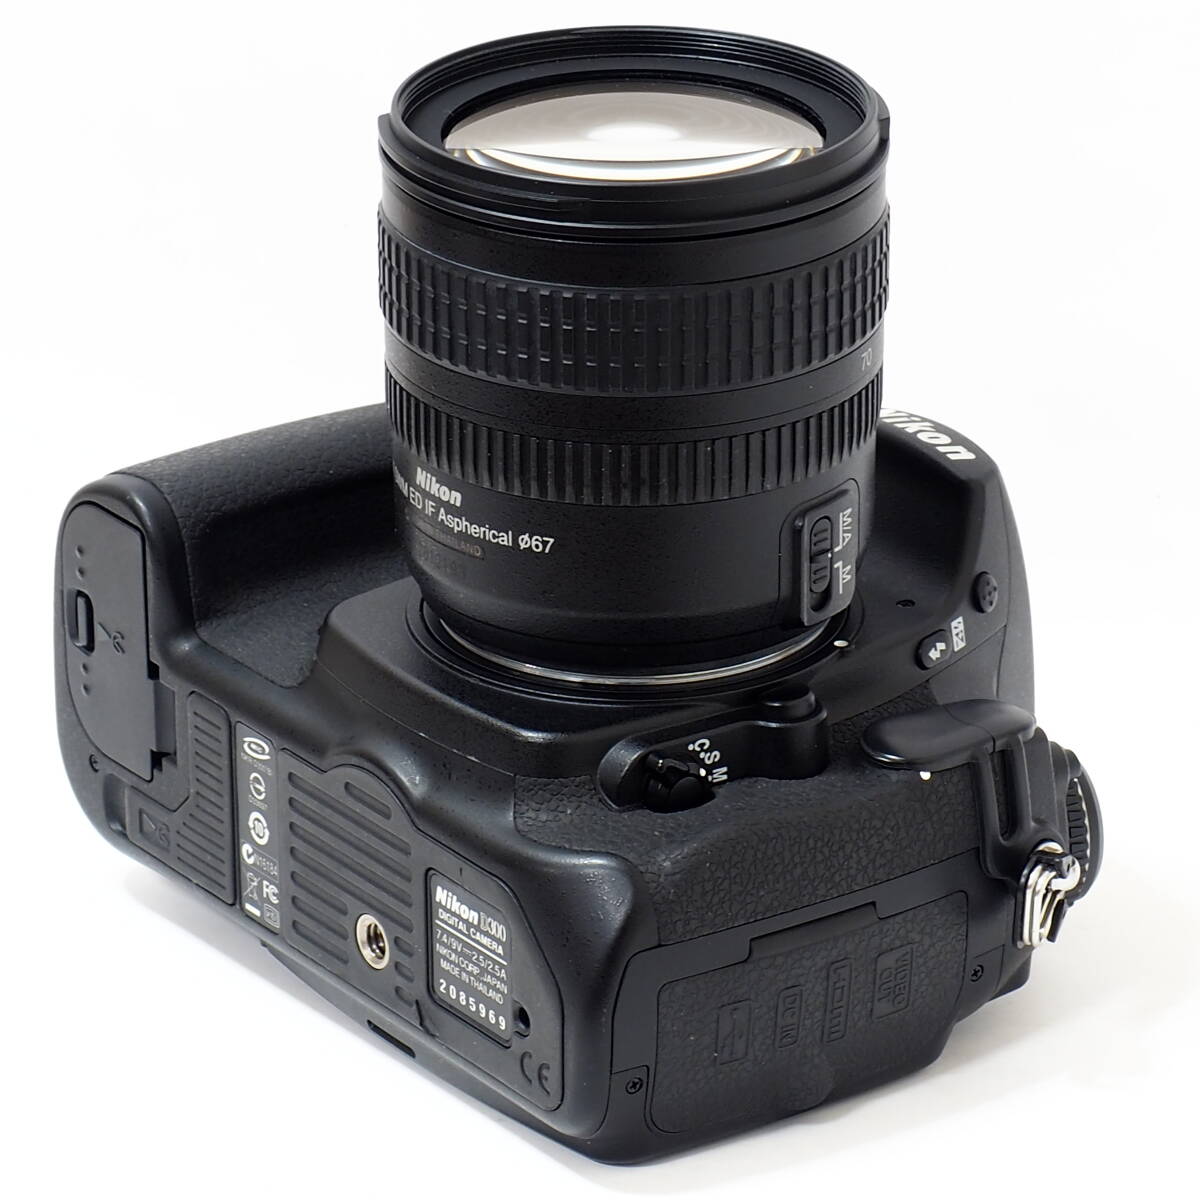 Nikon D300 AF-S DX NIKKOR 18-70mm F3.5-4.5G ED APS-C DX のフラッグシップ 撮影テスト確認 ショット数 2,779枚 EN-EL3e MH-18a 木村拓哉の画像7